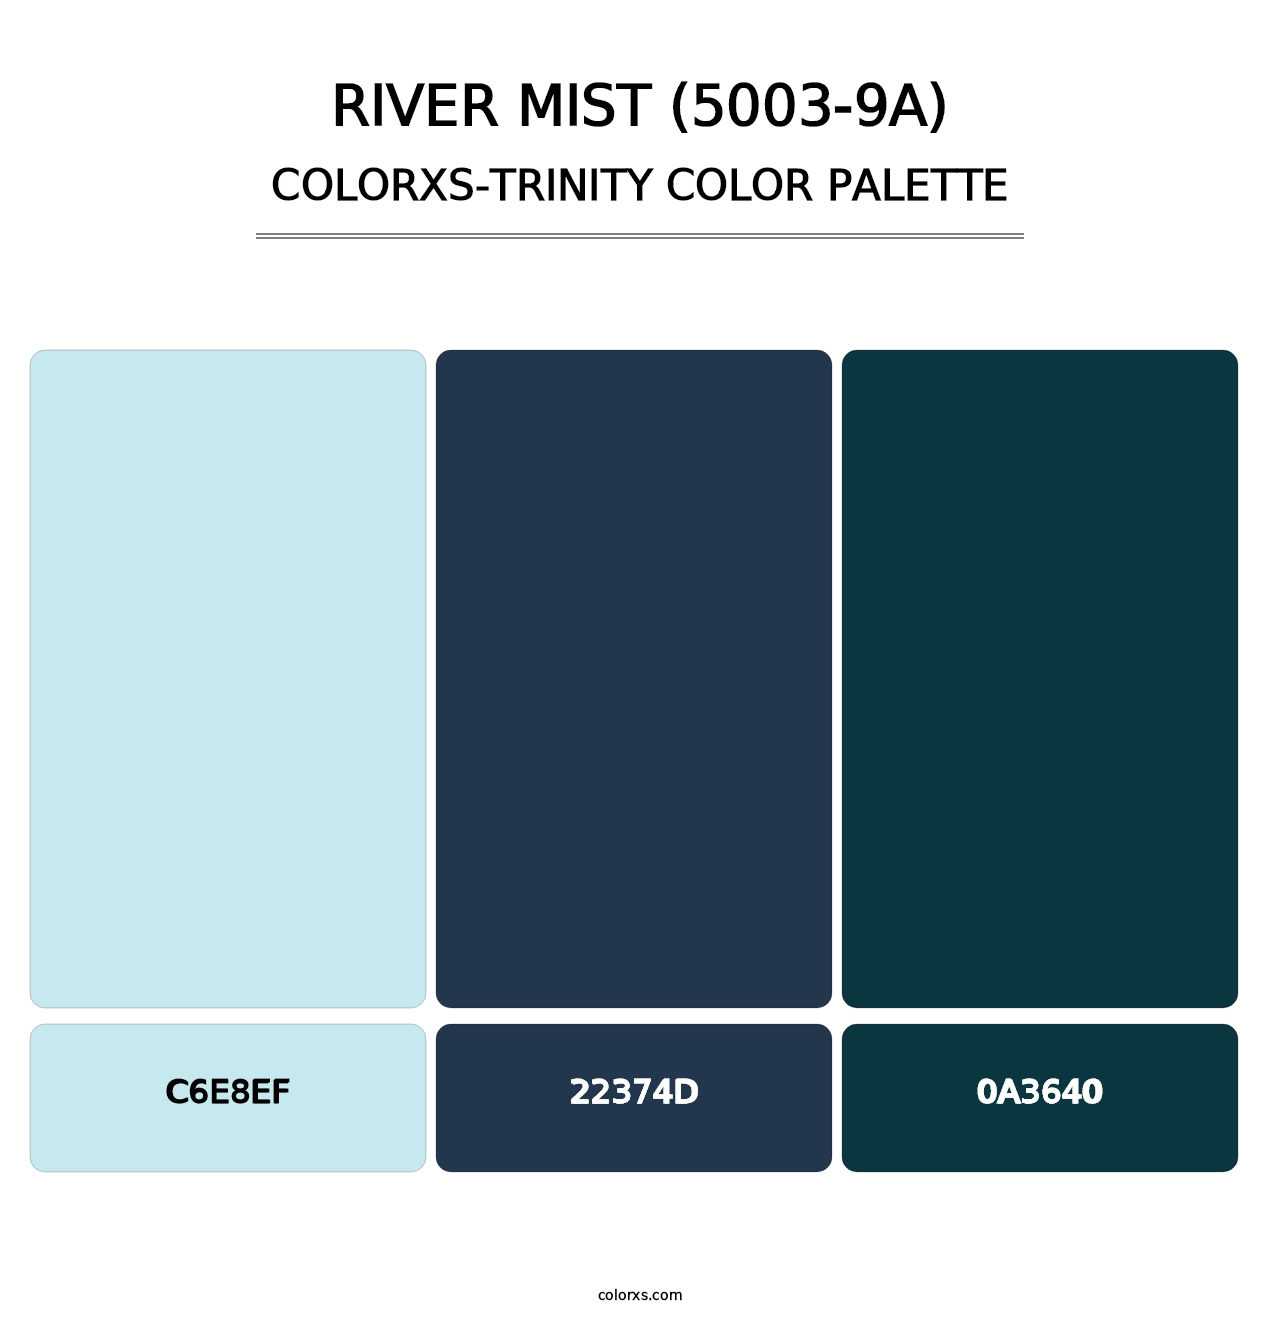 River Mist (5003-9A) - Colorxs Trinity Palette